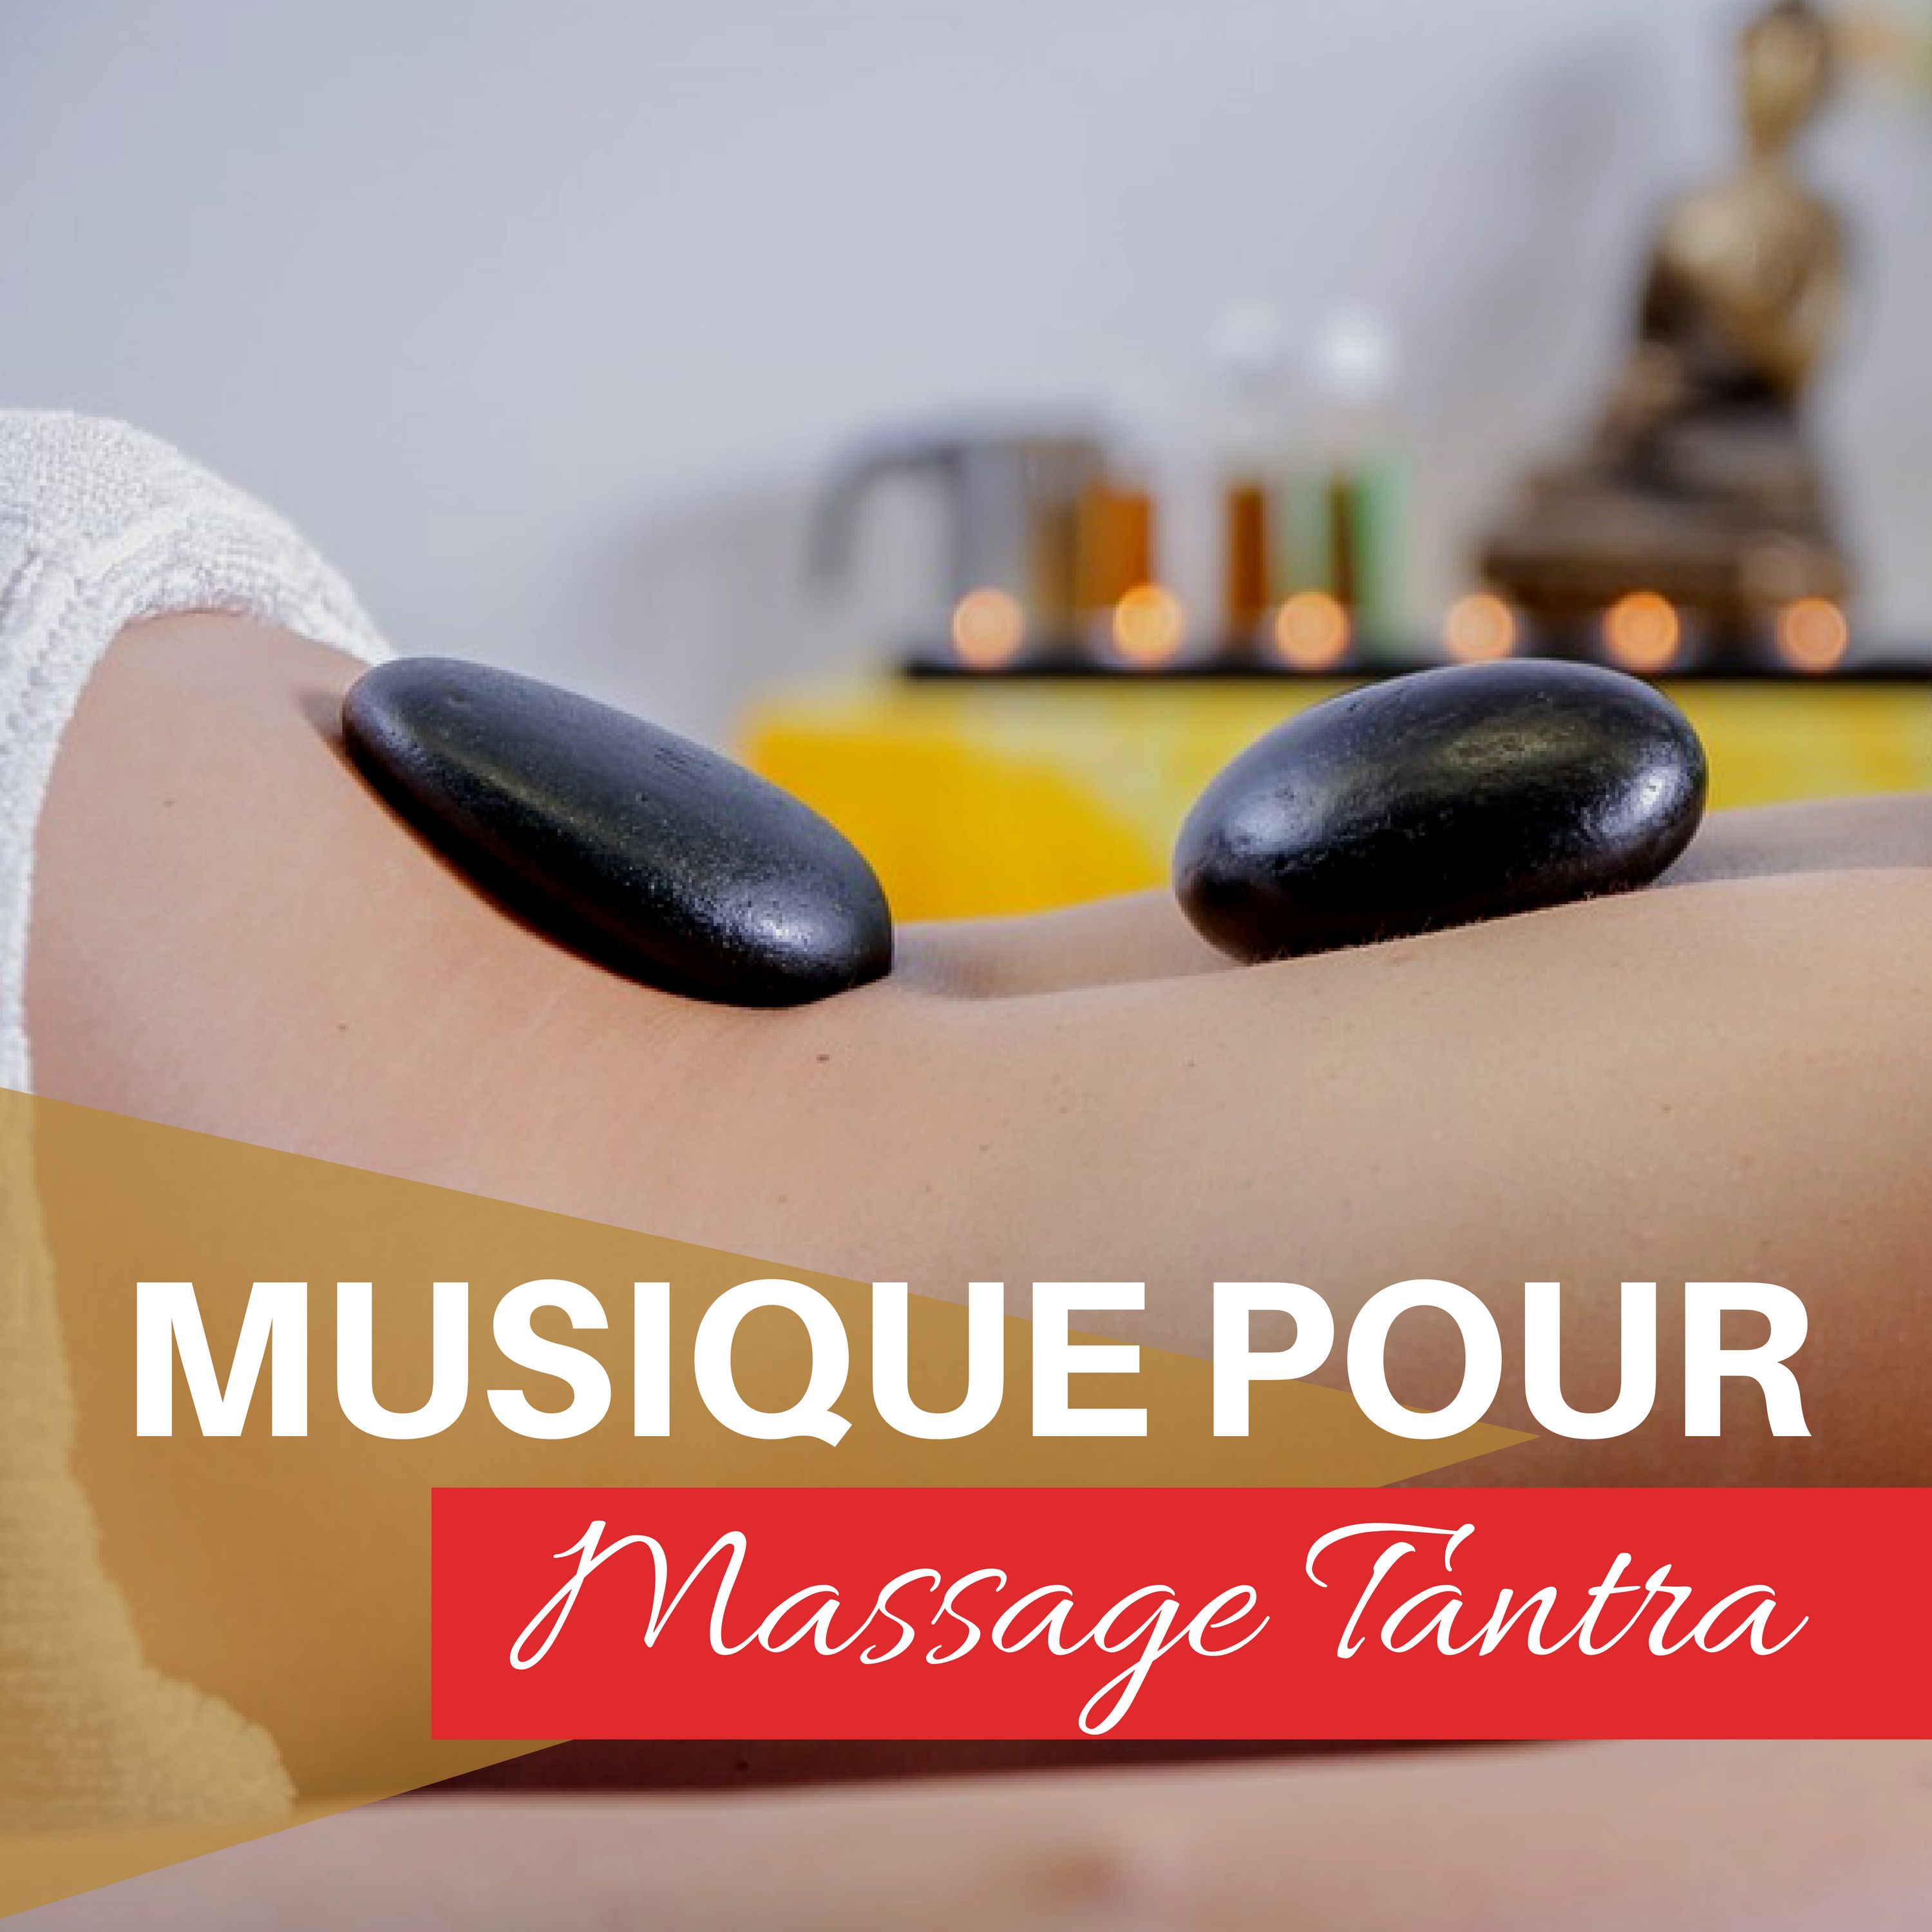 Musique pour Massage Tantra